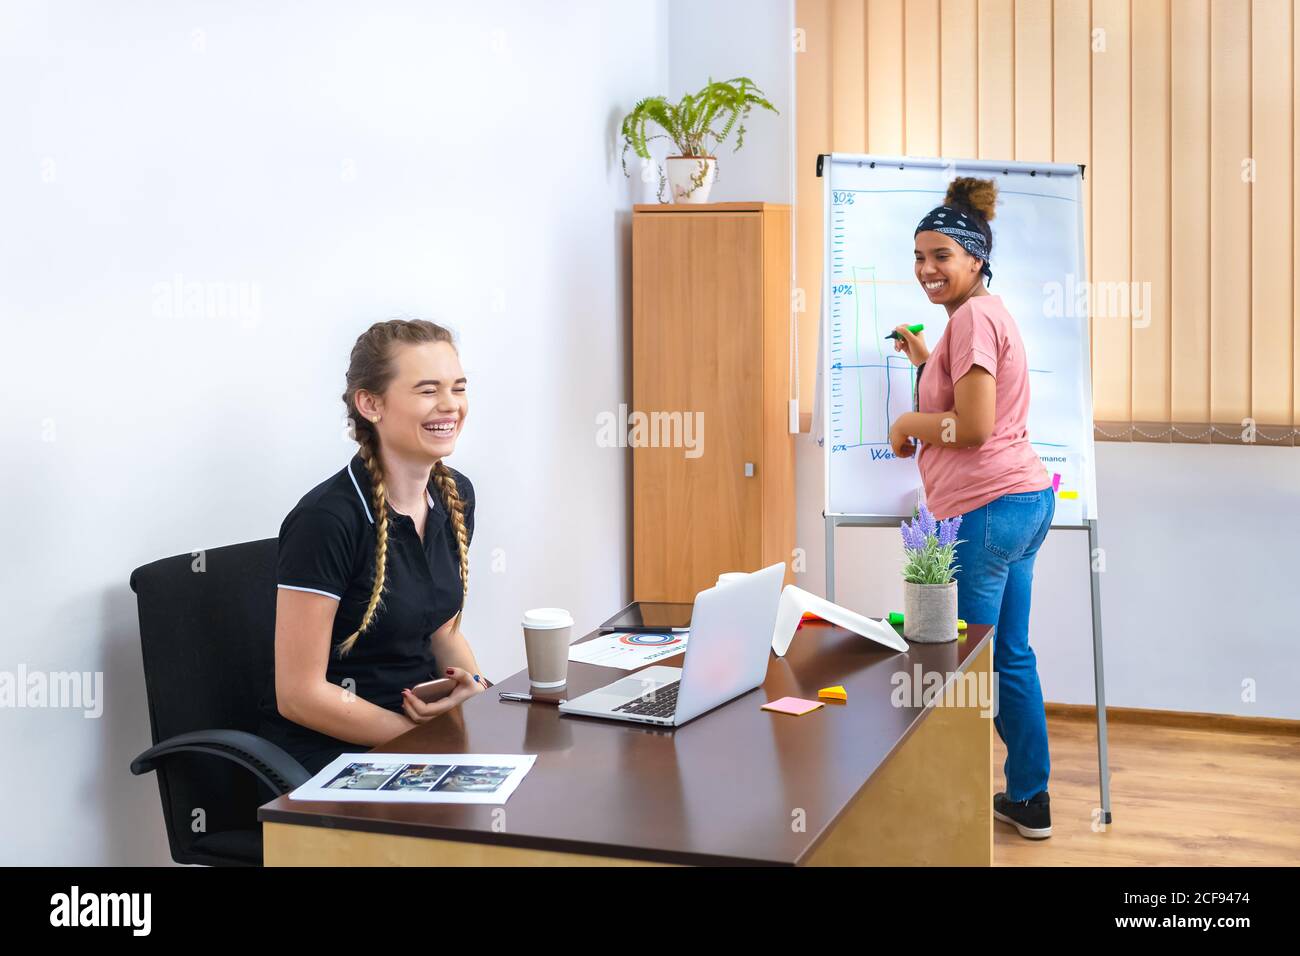 Dos mujeres multiétnicas sonrientes que se divierten en el trabajo brainstorming con notas en el rotafolios de la oficina Foto de stock